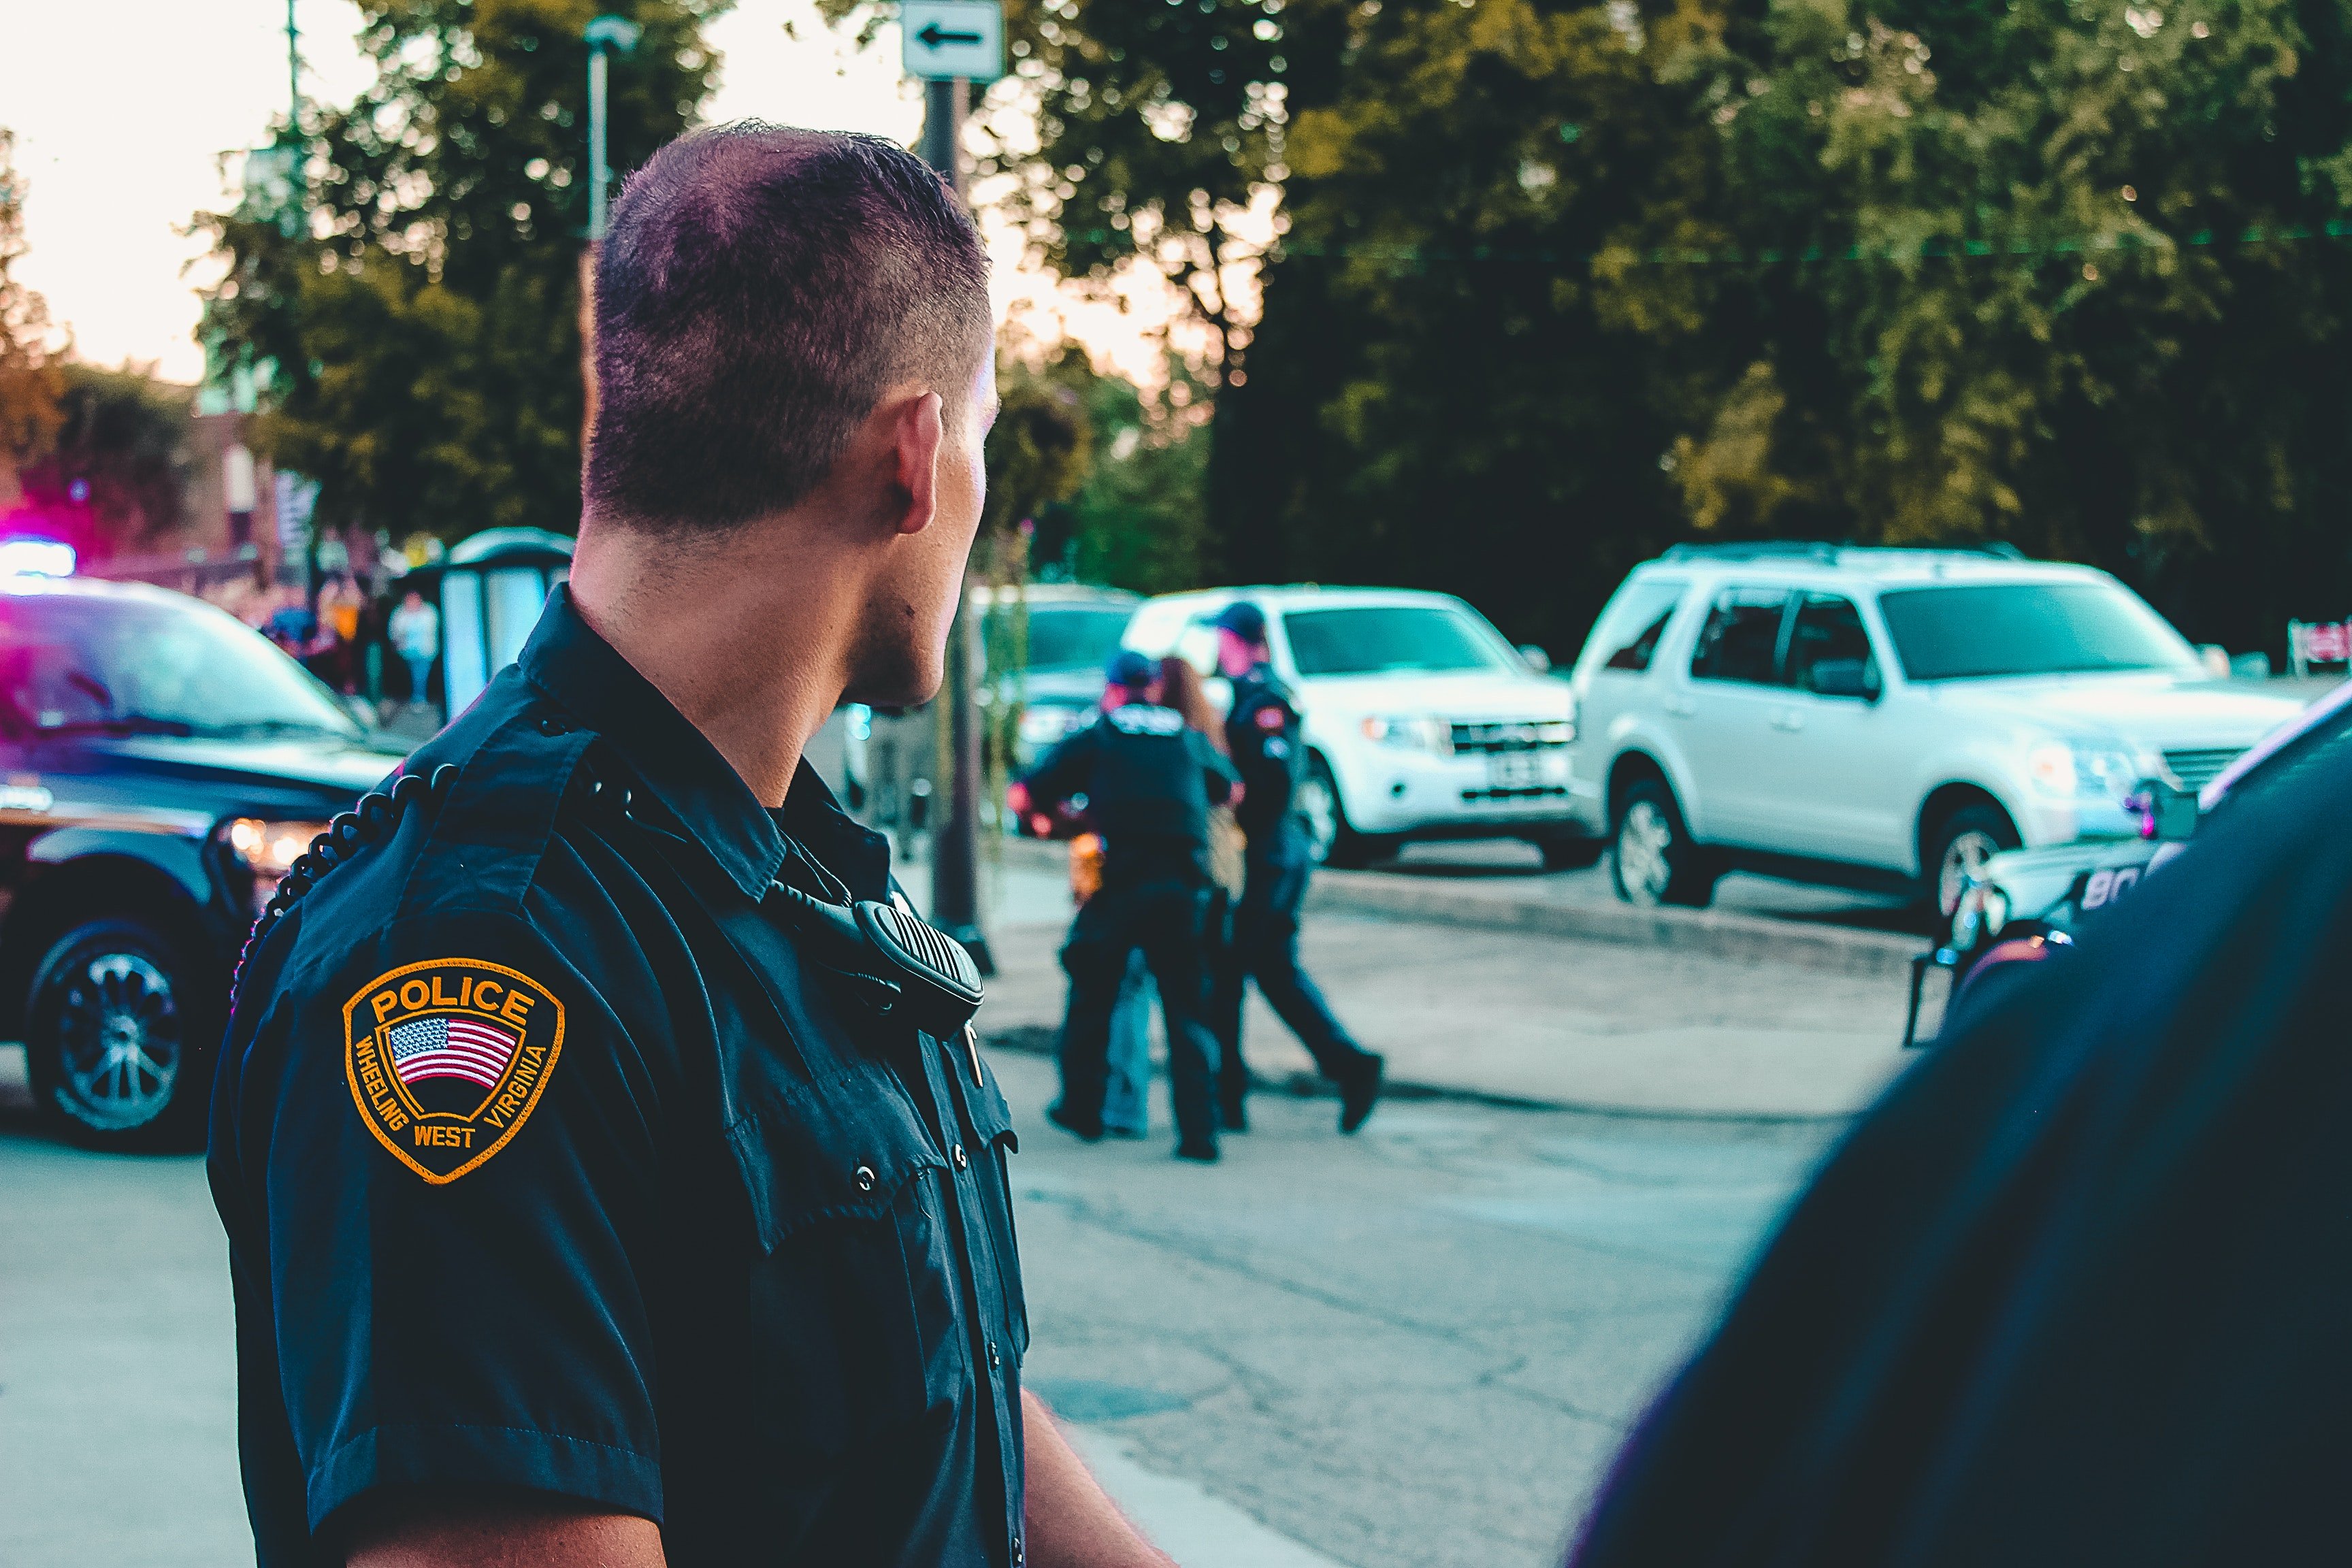 Ein Polizeibeamter blickt zurück in Richtung eines Fahrzeugs hinter ihm. | Quelle: Pexels/ Rosemary Ketchum